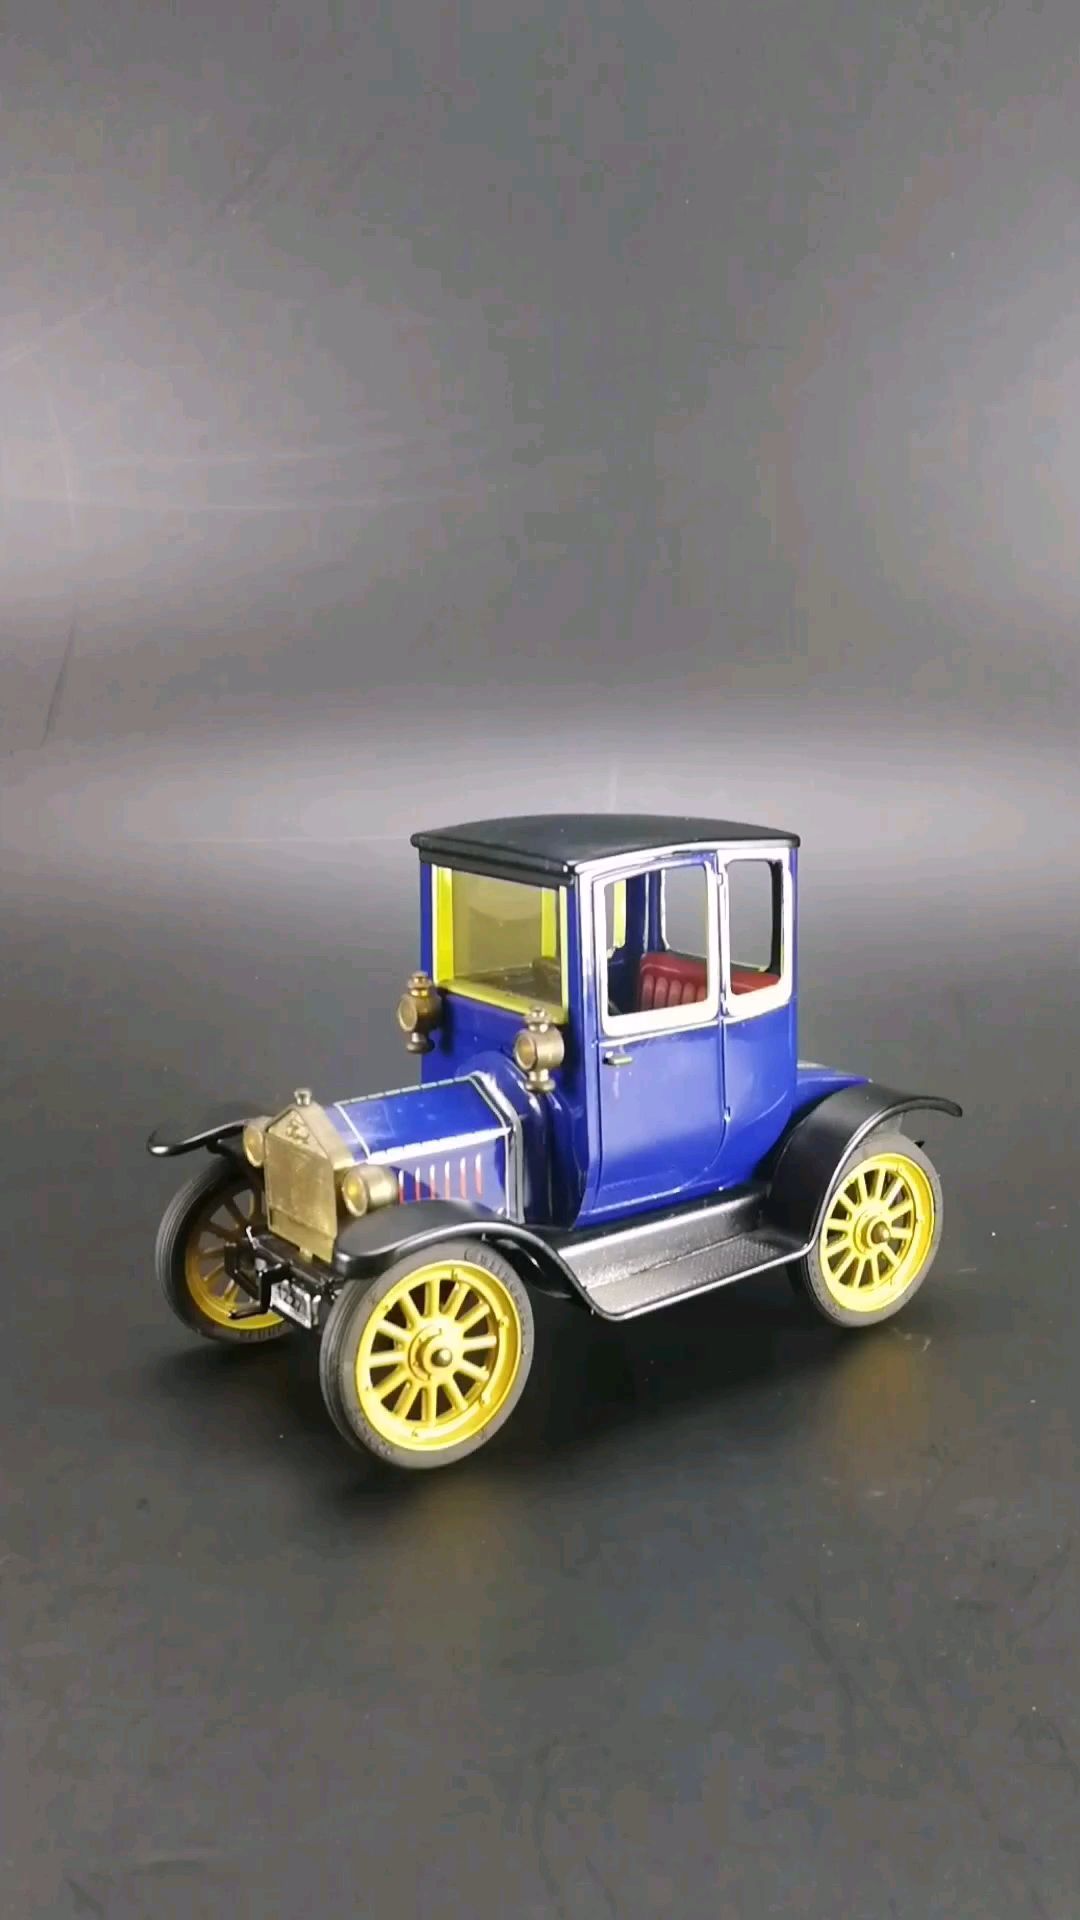 1917福特t型医生车,1:24比例铁皮玩具车,上发条可以走动